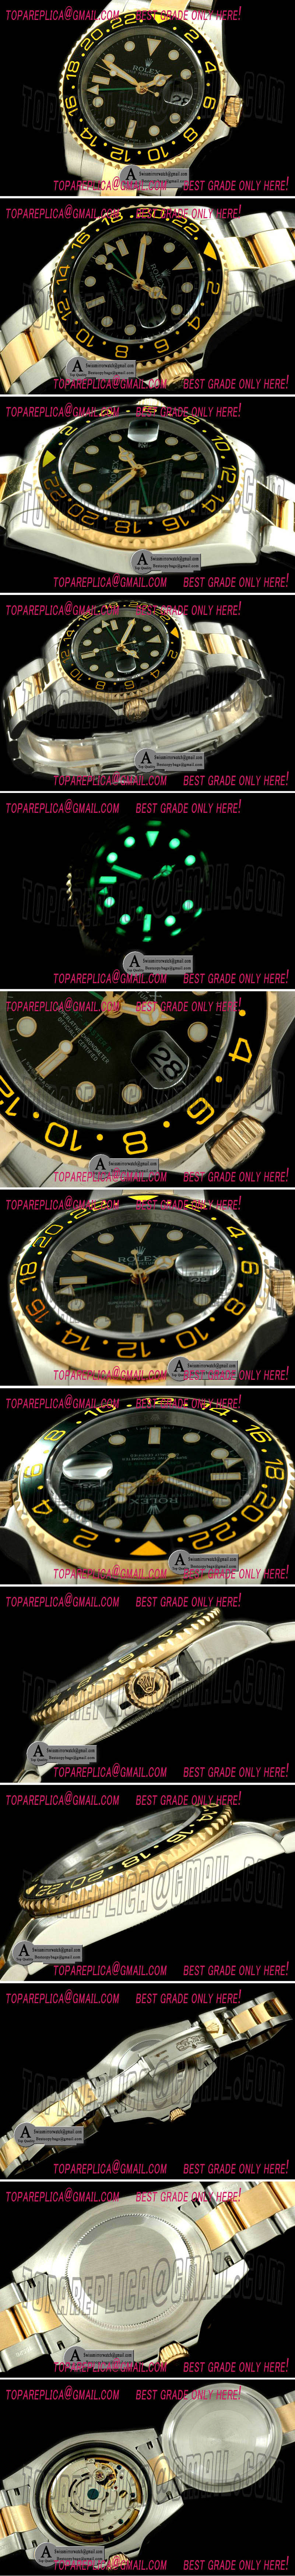 Rolex 116713LN GMT Master SS/Yellow Gold 2008 GMT TT Black Asian 2813 Replica Watches